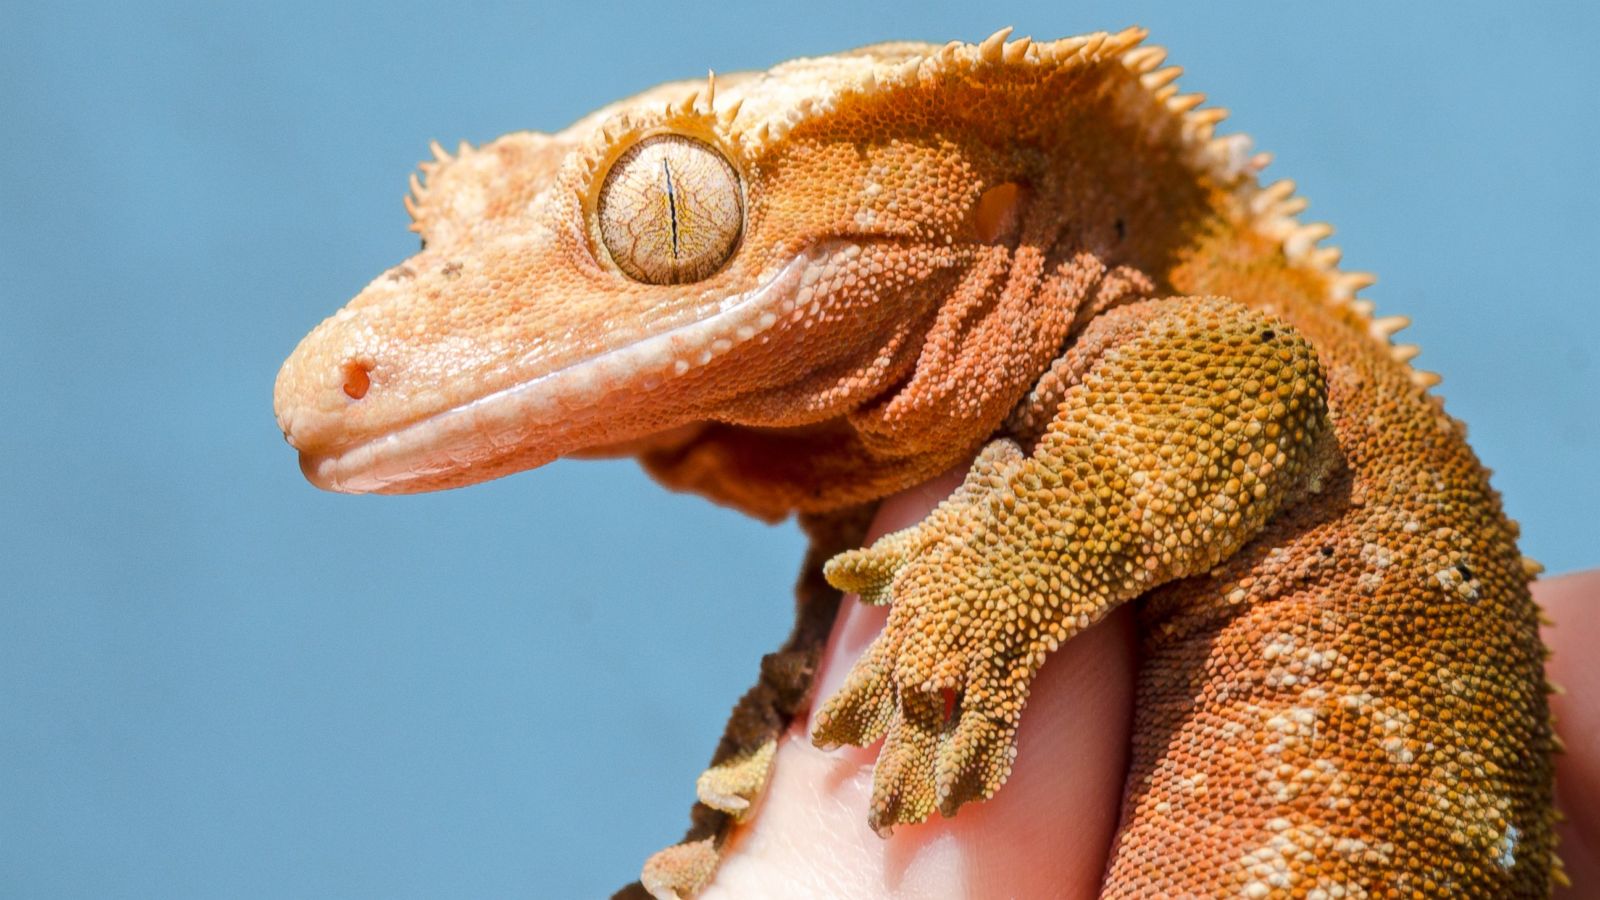 Do Geckos Carry Salmonella?